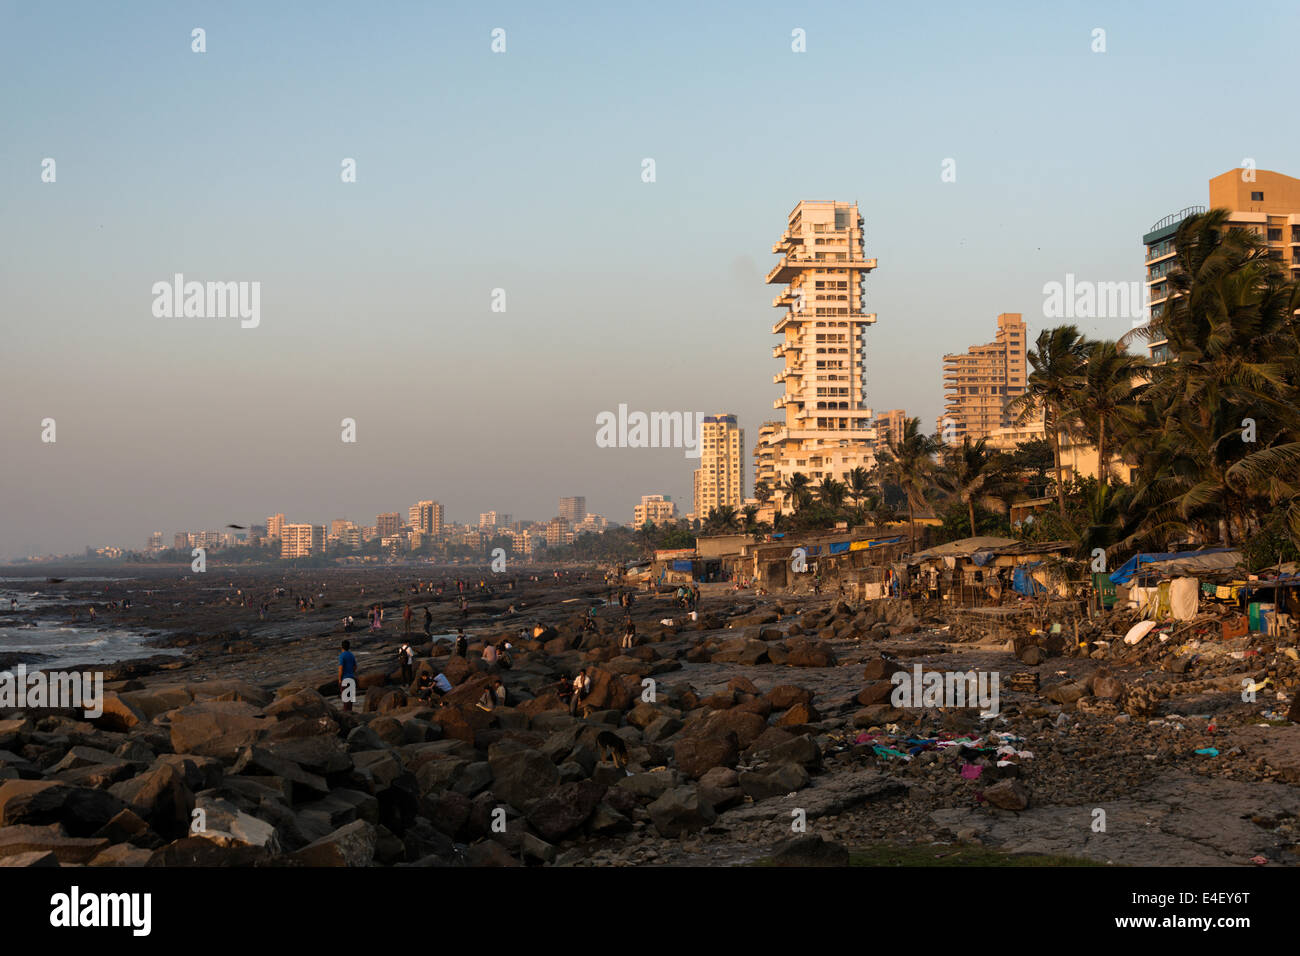 MUMBAI, INDIA - JANUARY 2014: People camps at Dadar beach in Mumbai. Stock Photo